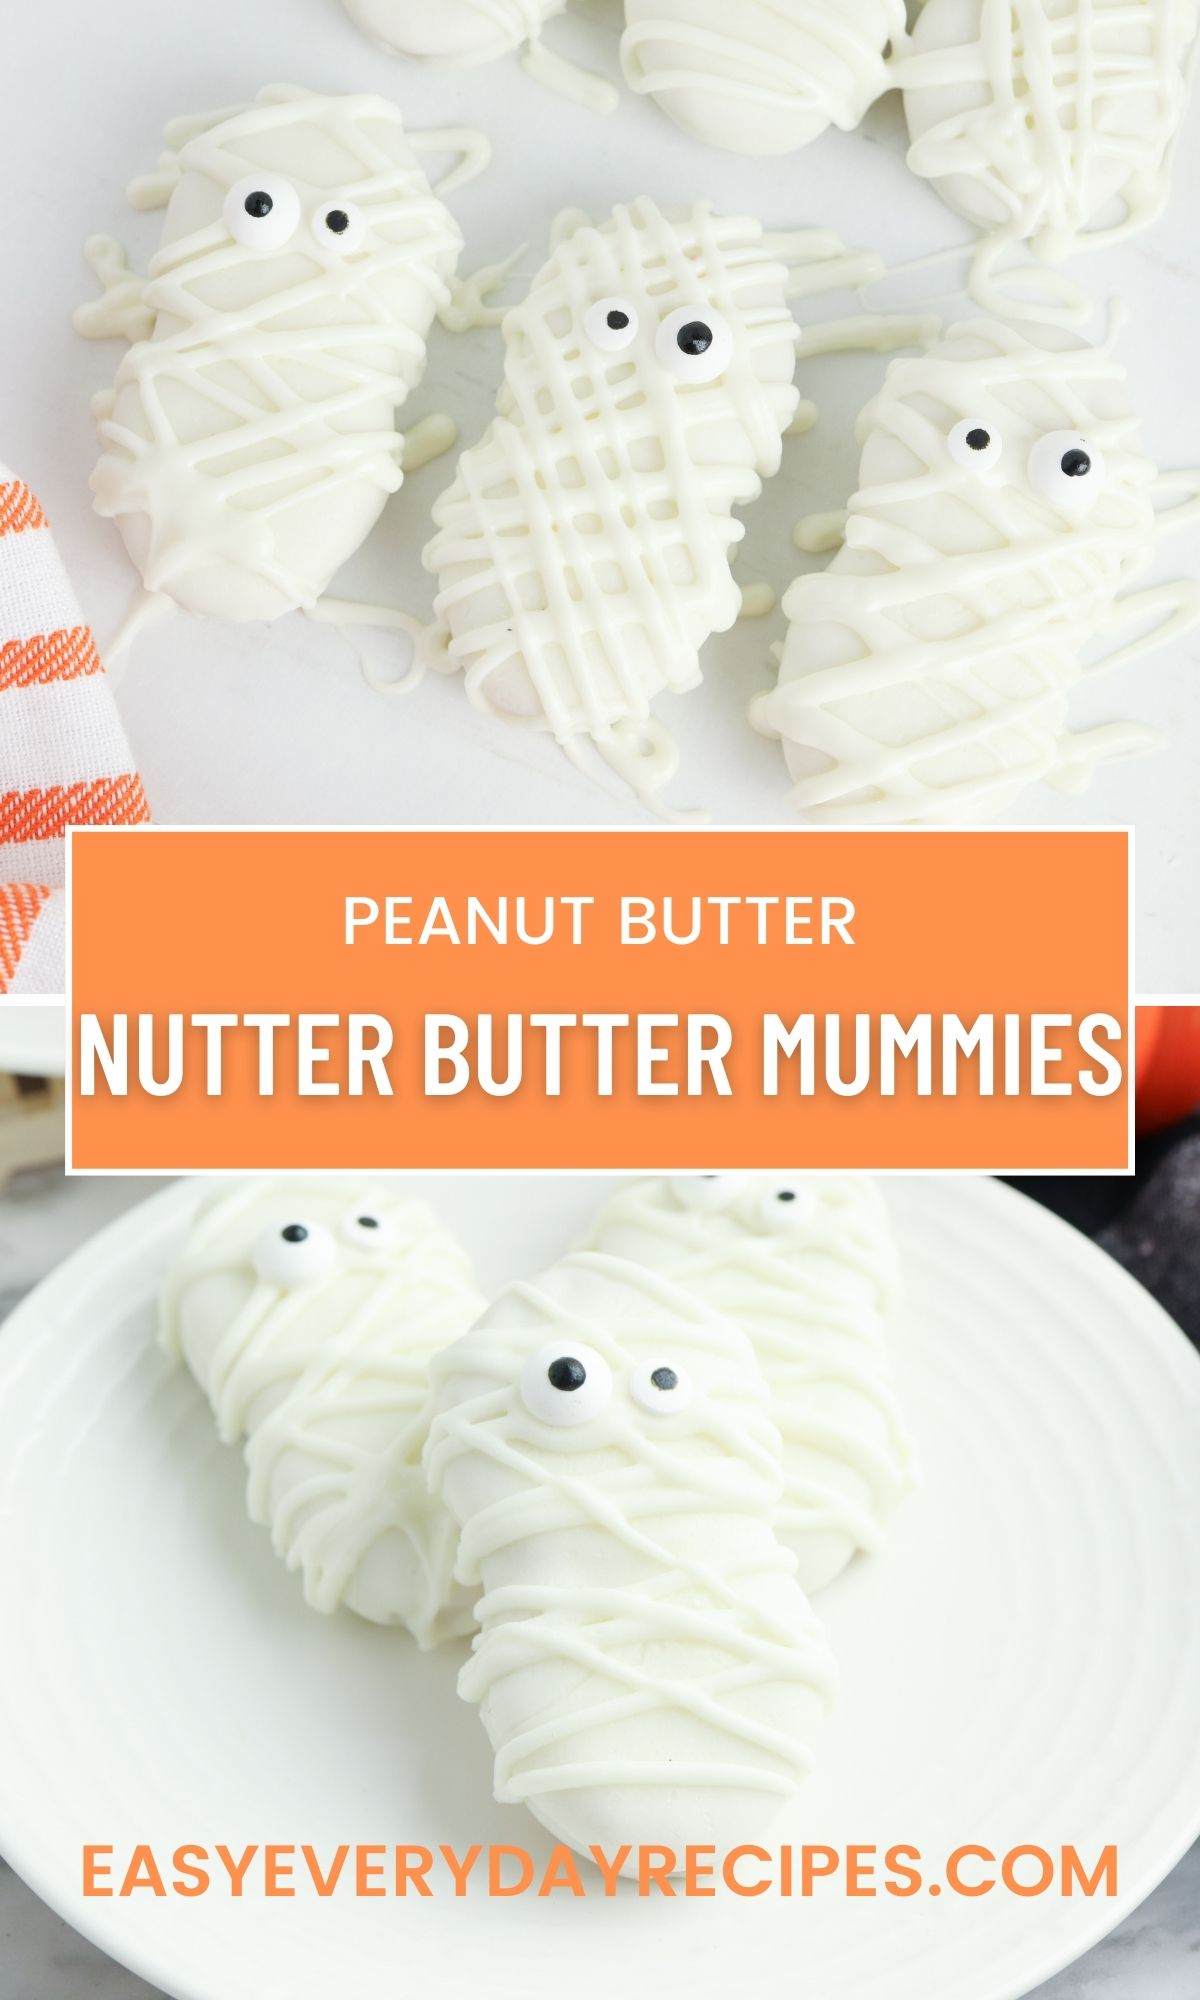 Peanut butter nut butter mummies.